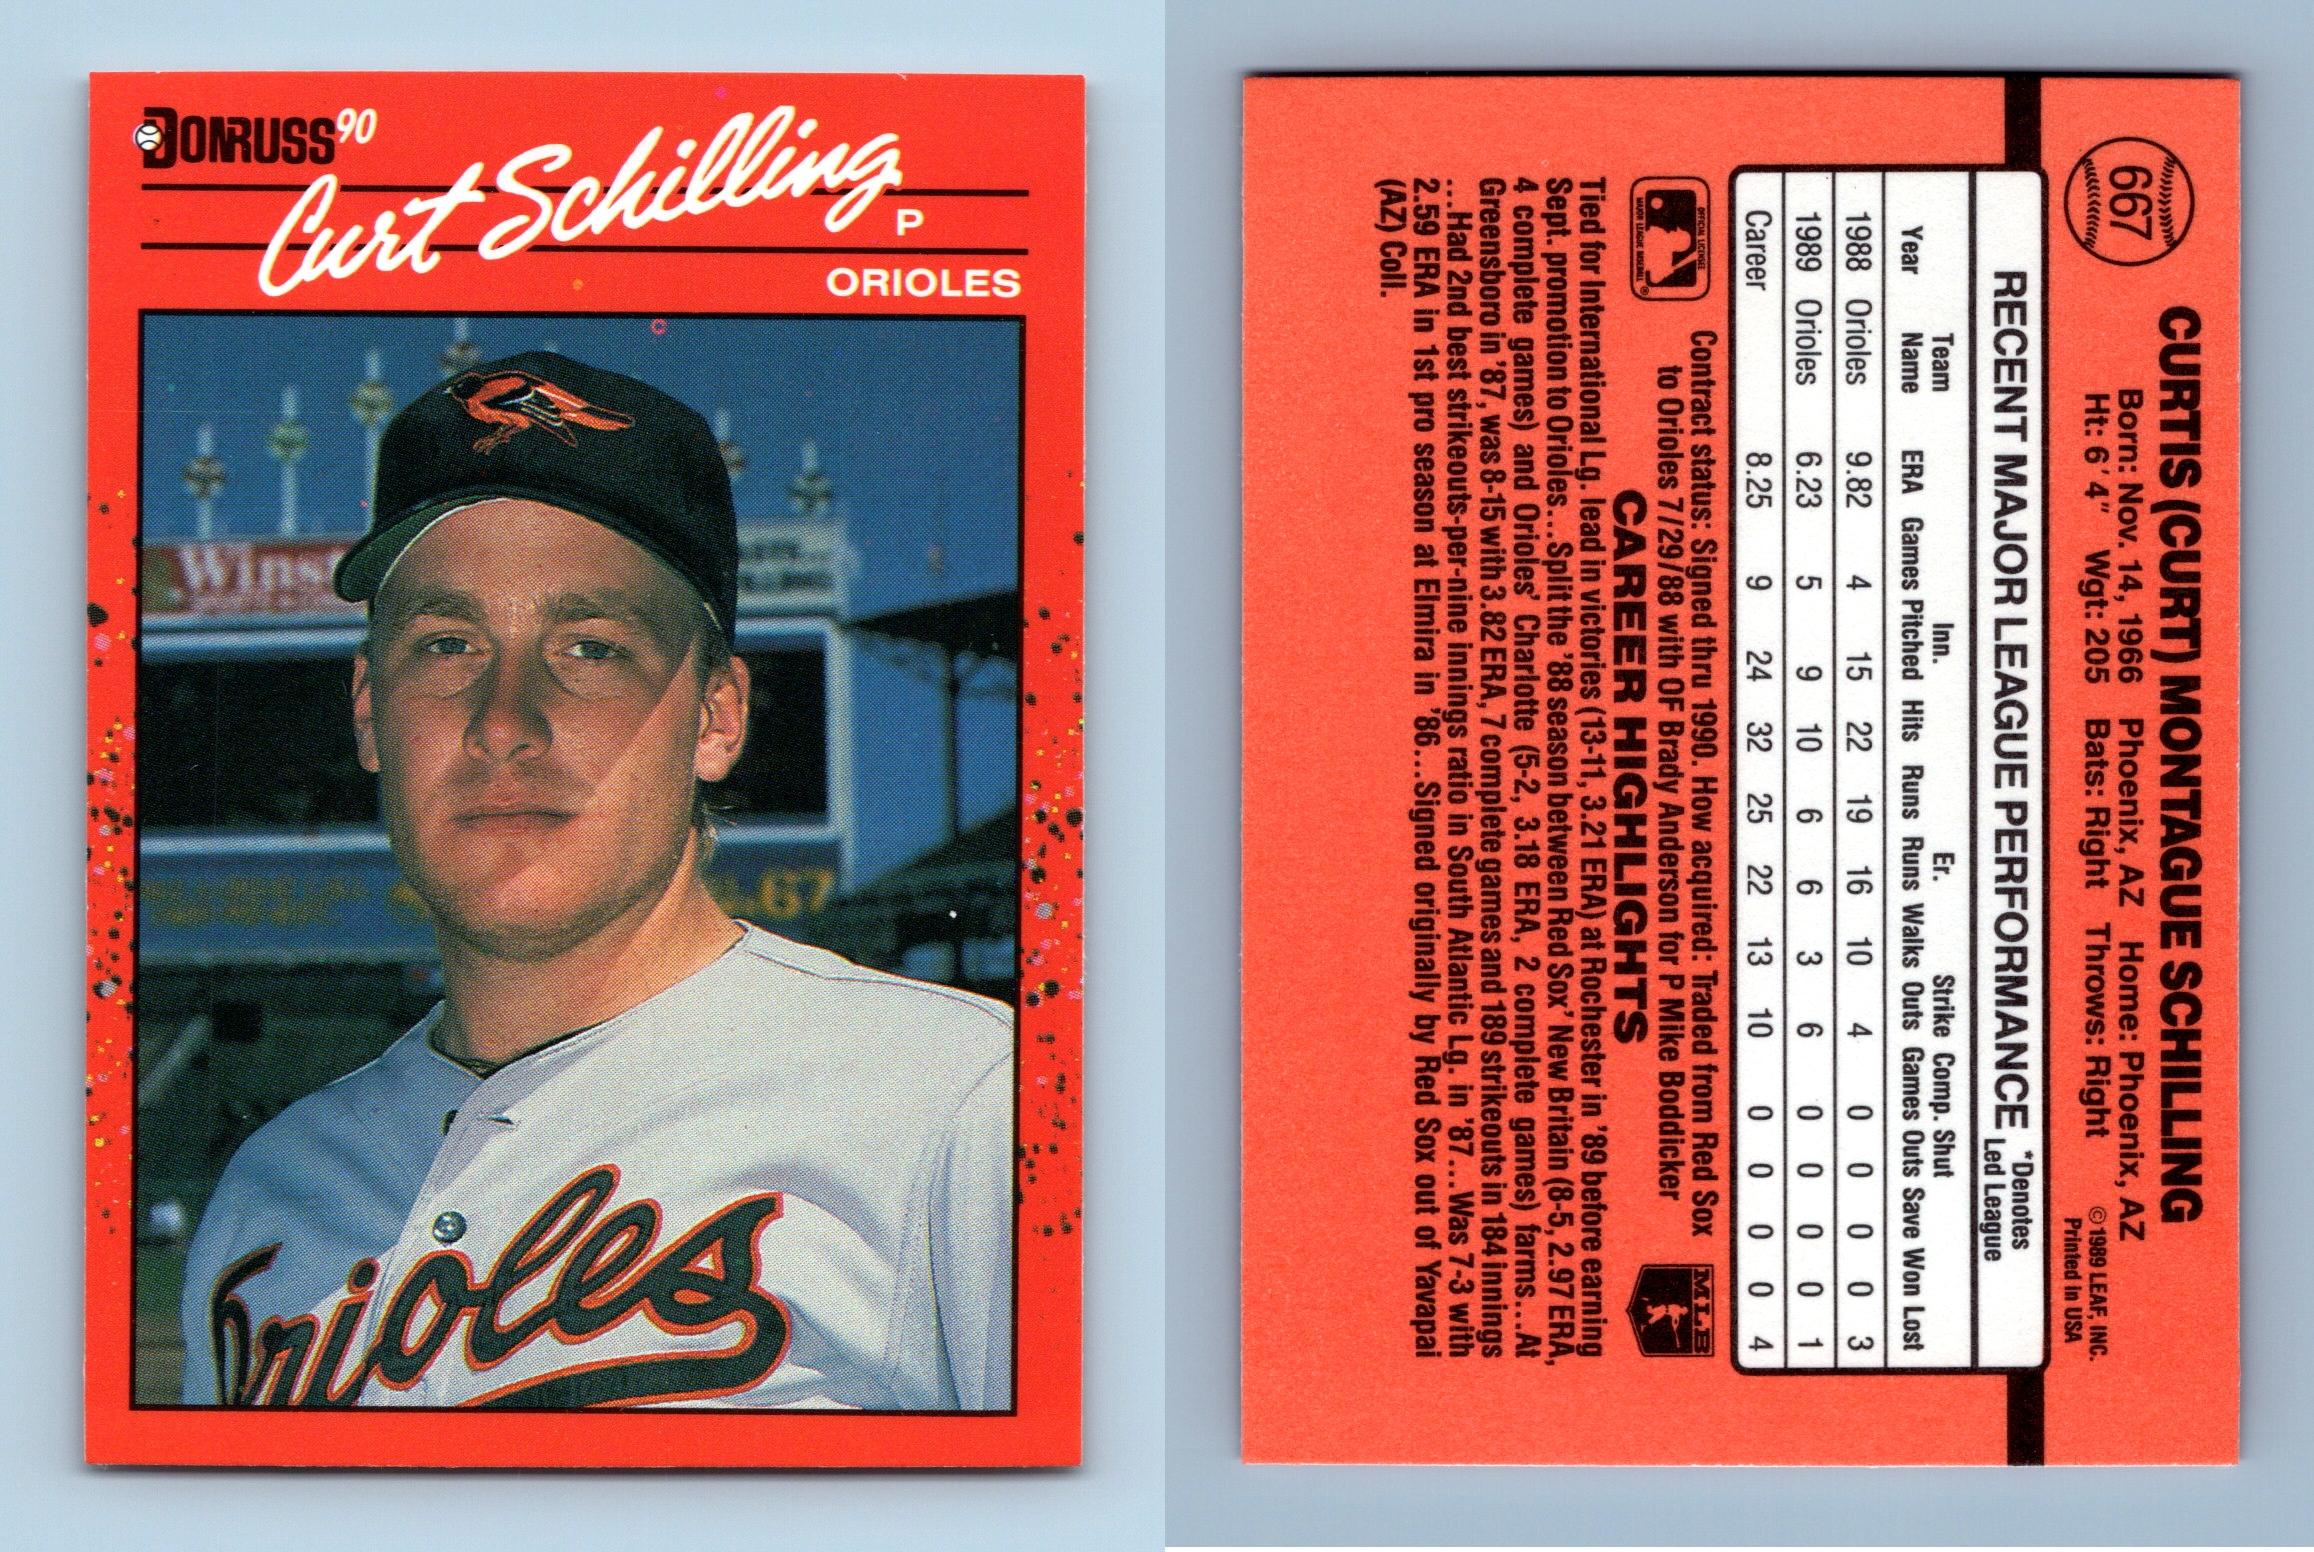 Curt Schilling Baseball Card